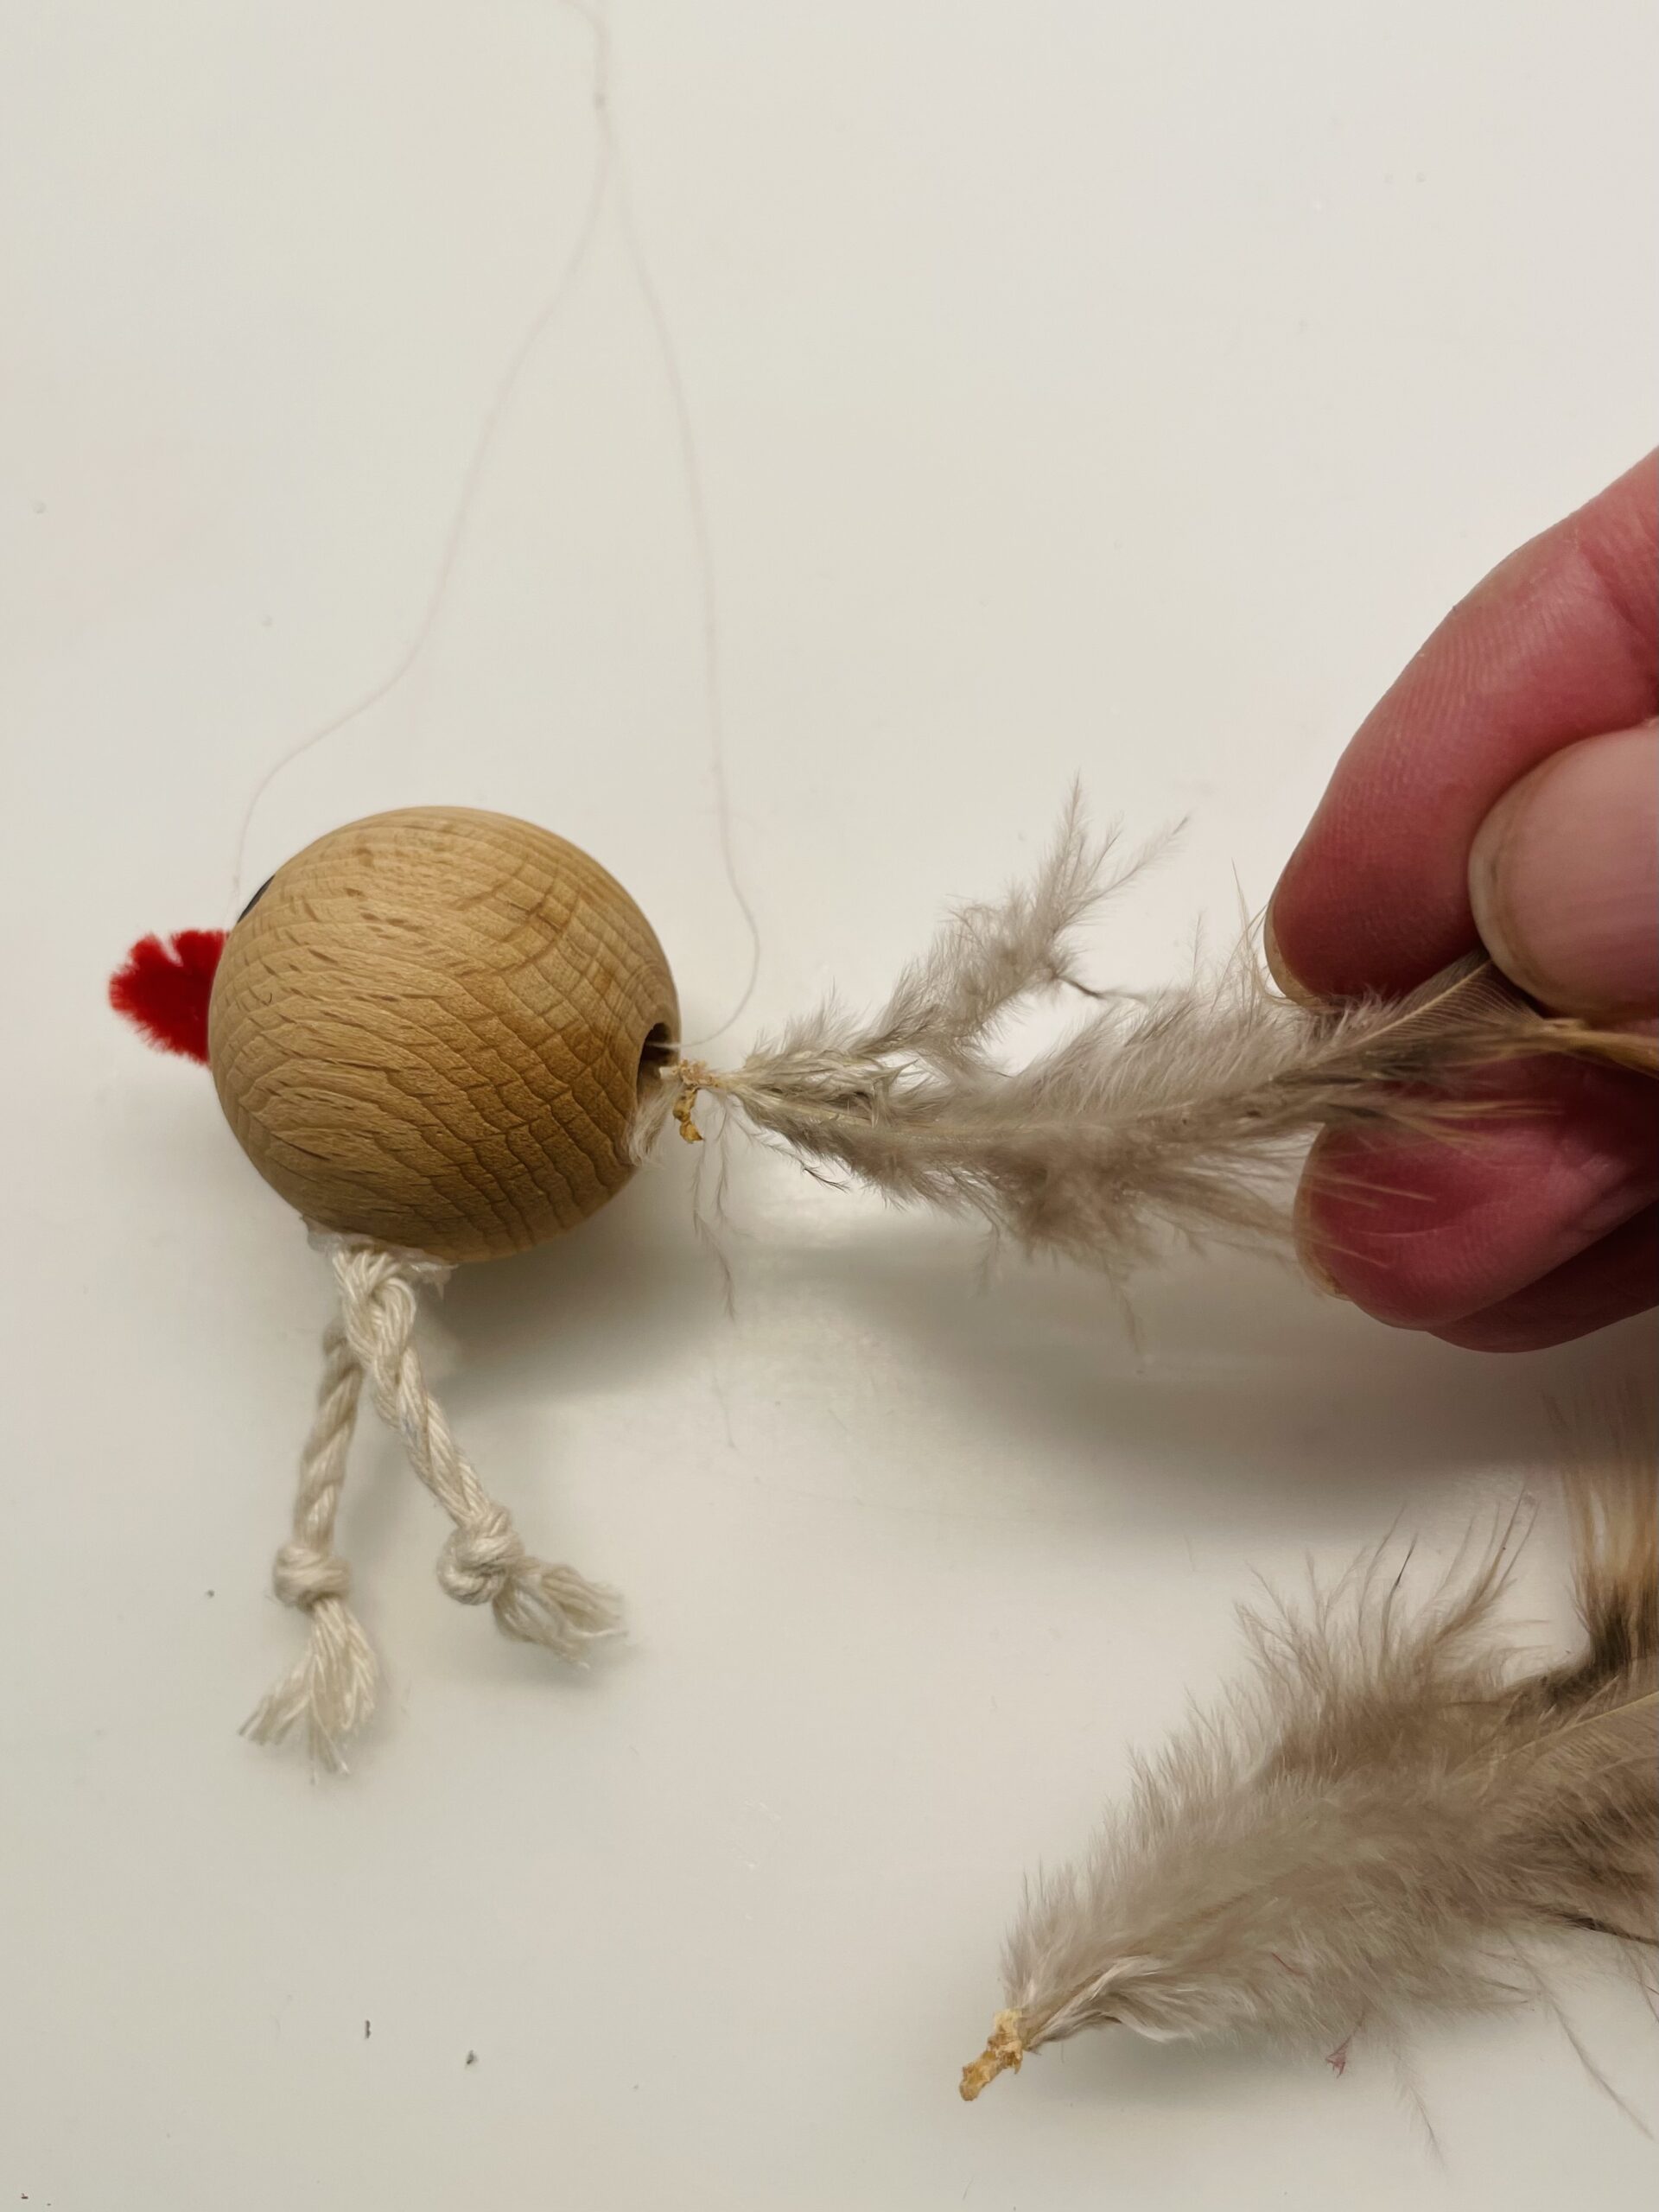 Bild zum Schritt 9 für das Bastel- und DIY-Abenteuer für Kinder: 'In das noch freie Loch der Perle werden Federn gesteckt....'